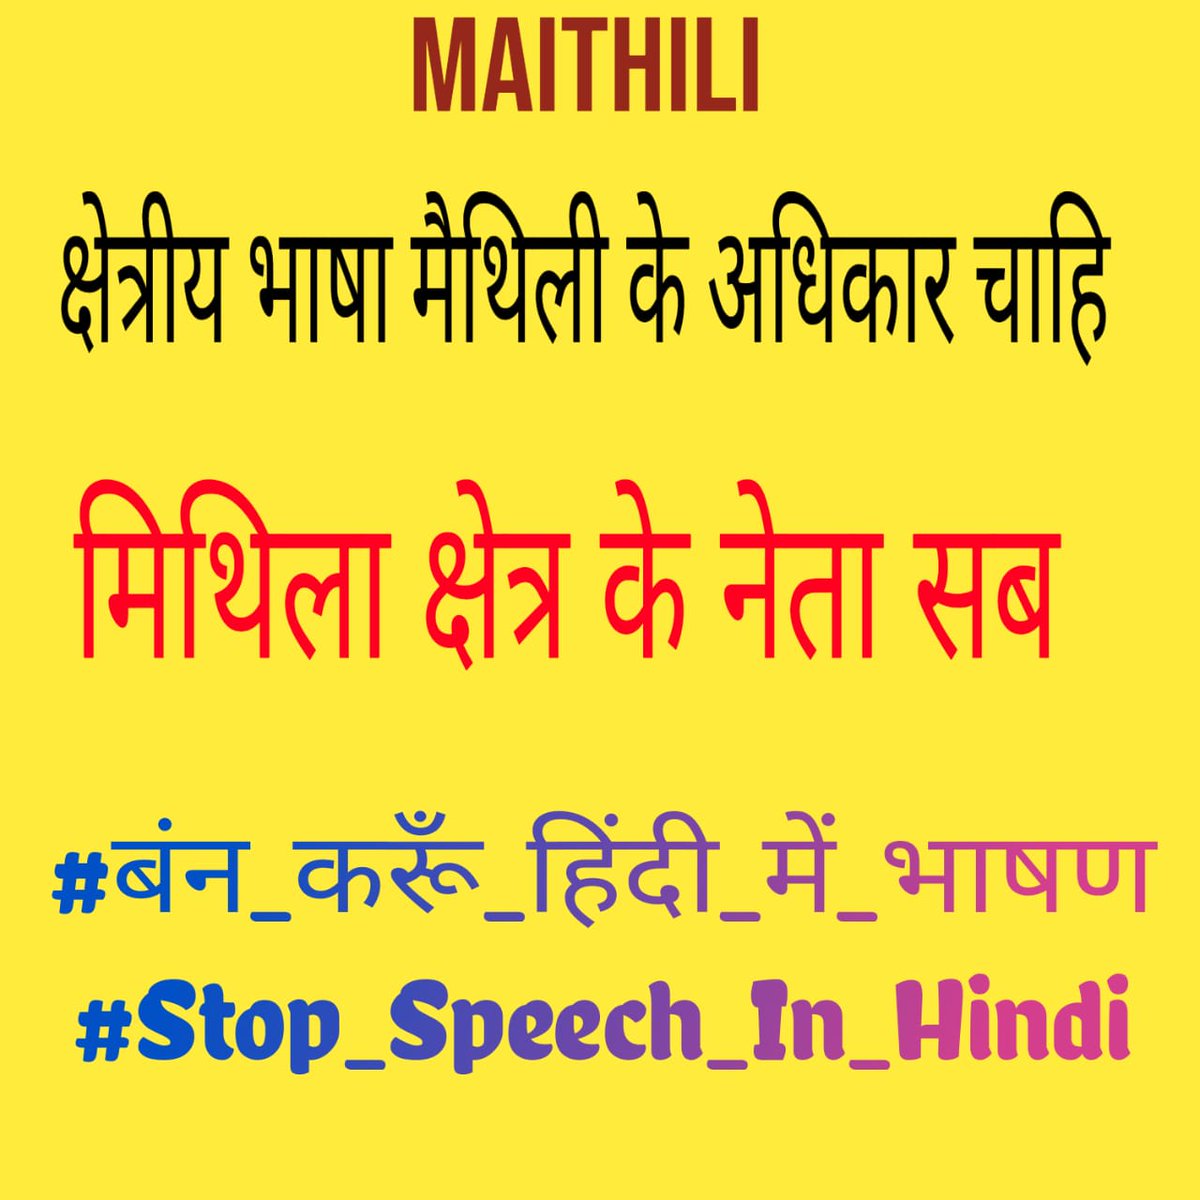 #बंन_करूँ_हिंदी_में_भाषण
#Stop_Speech_In_Hindi